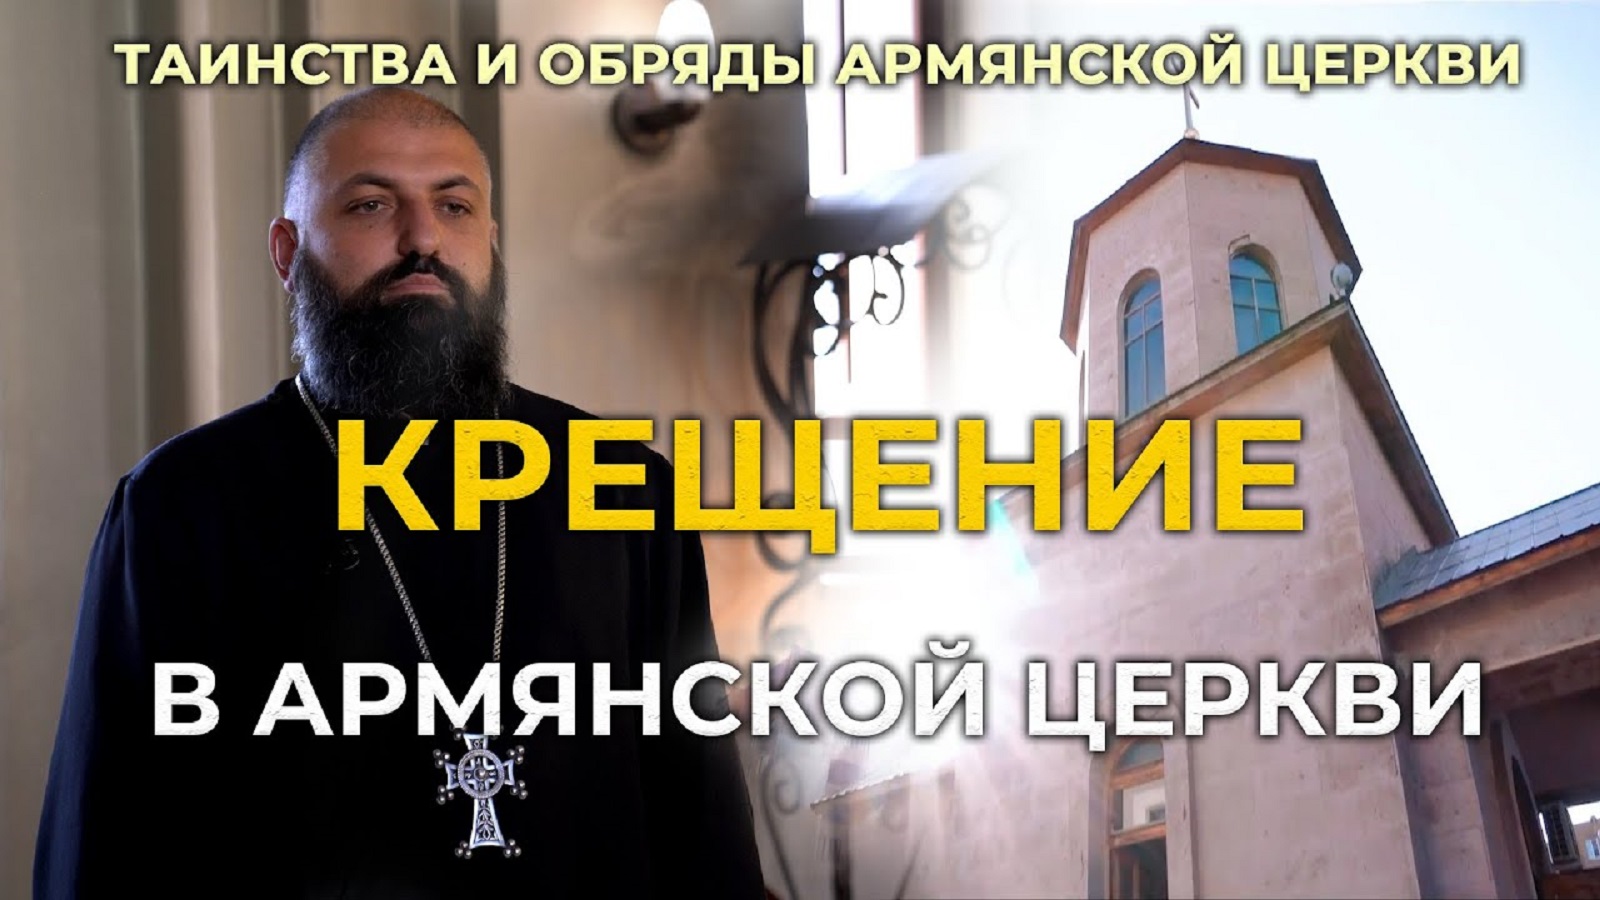 Крещение в Армянской Церкви/Таинства и обряды Армянской Церкви/HAYK media